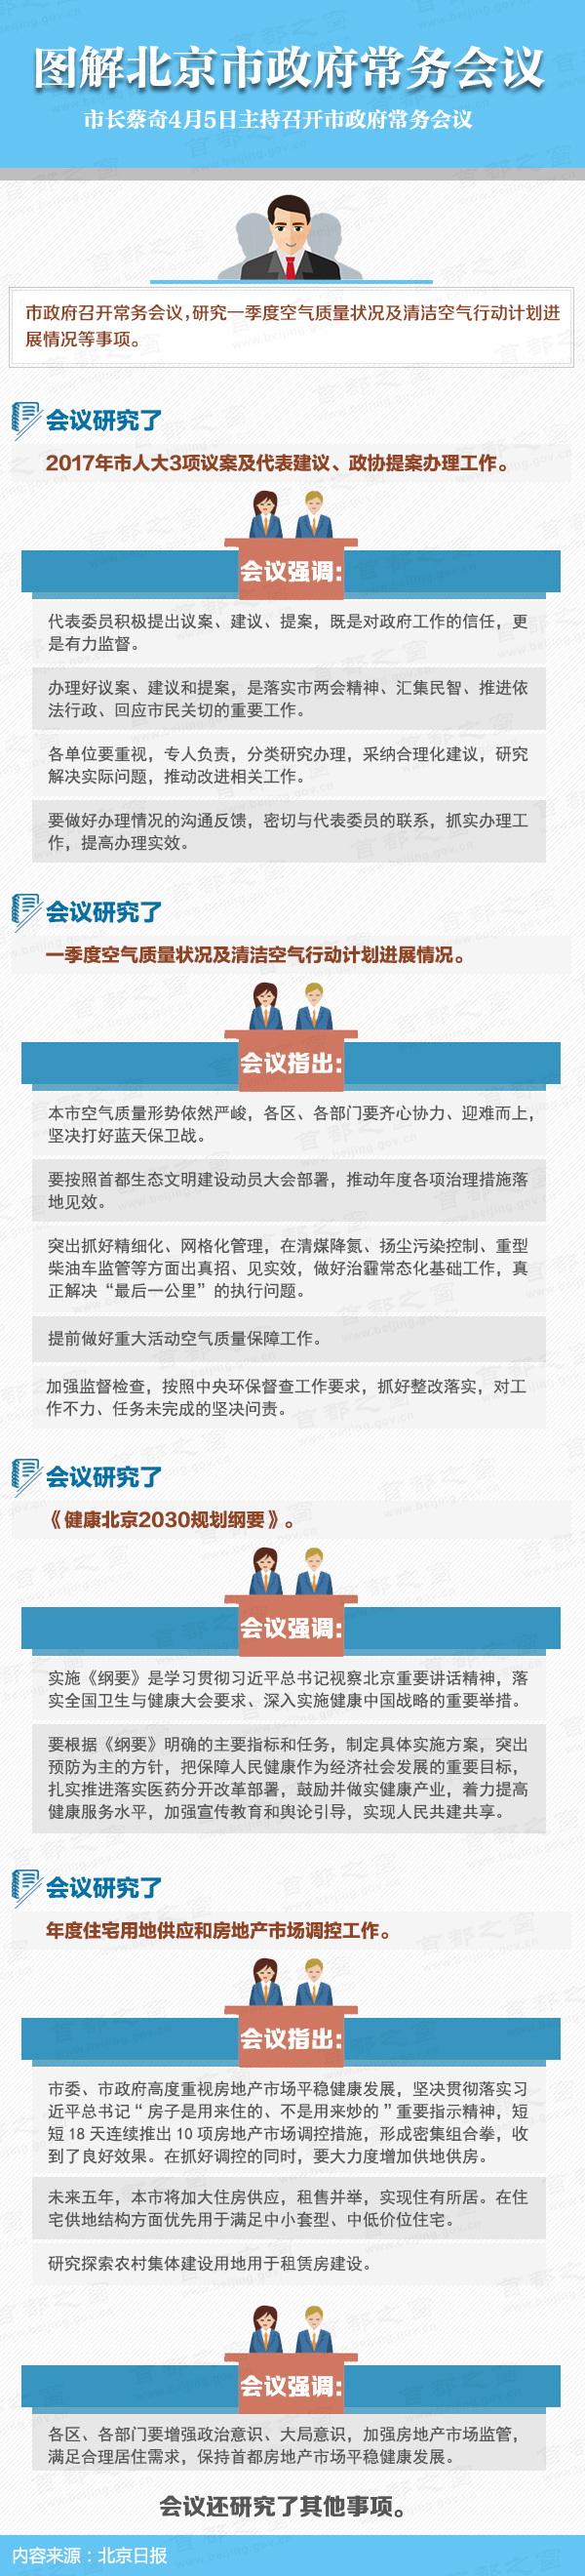 图解2017年4月5日北京市政府常务会议